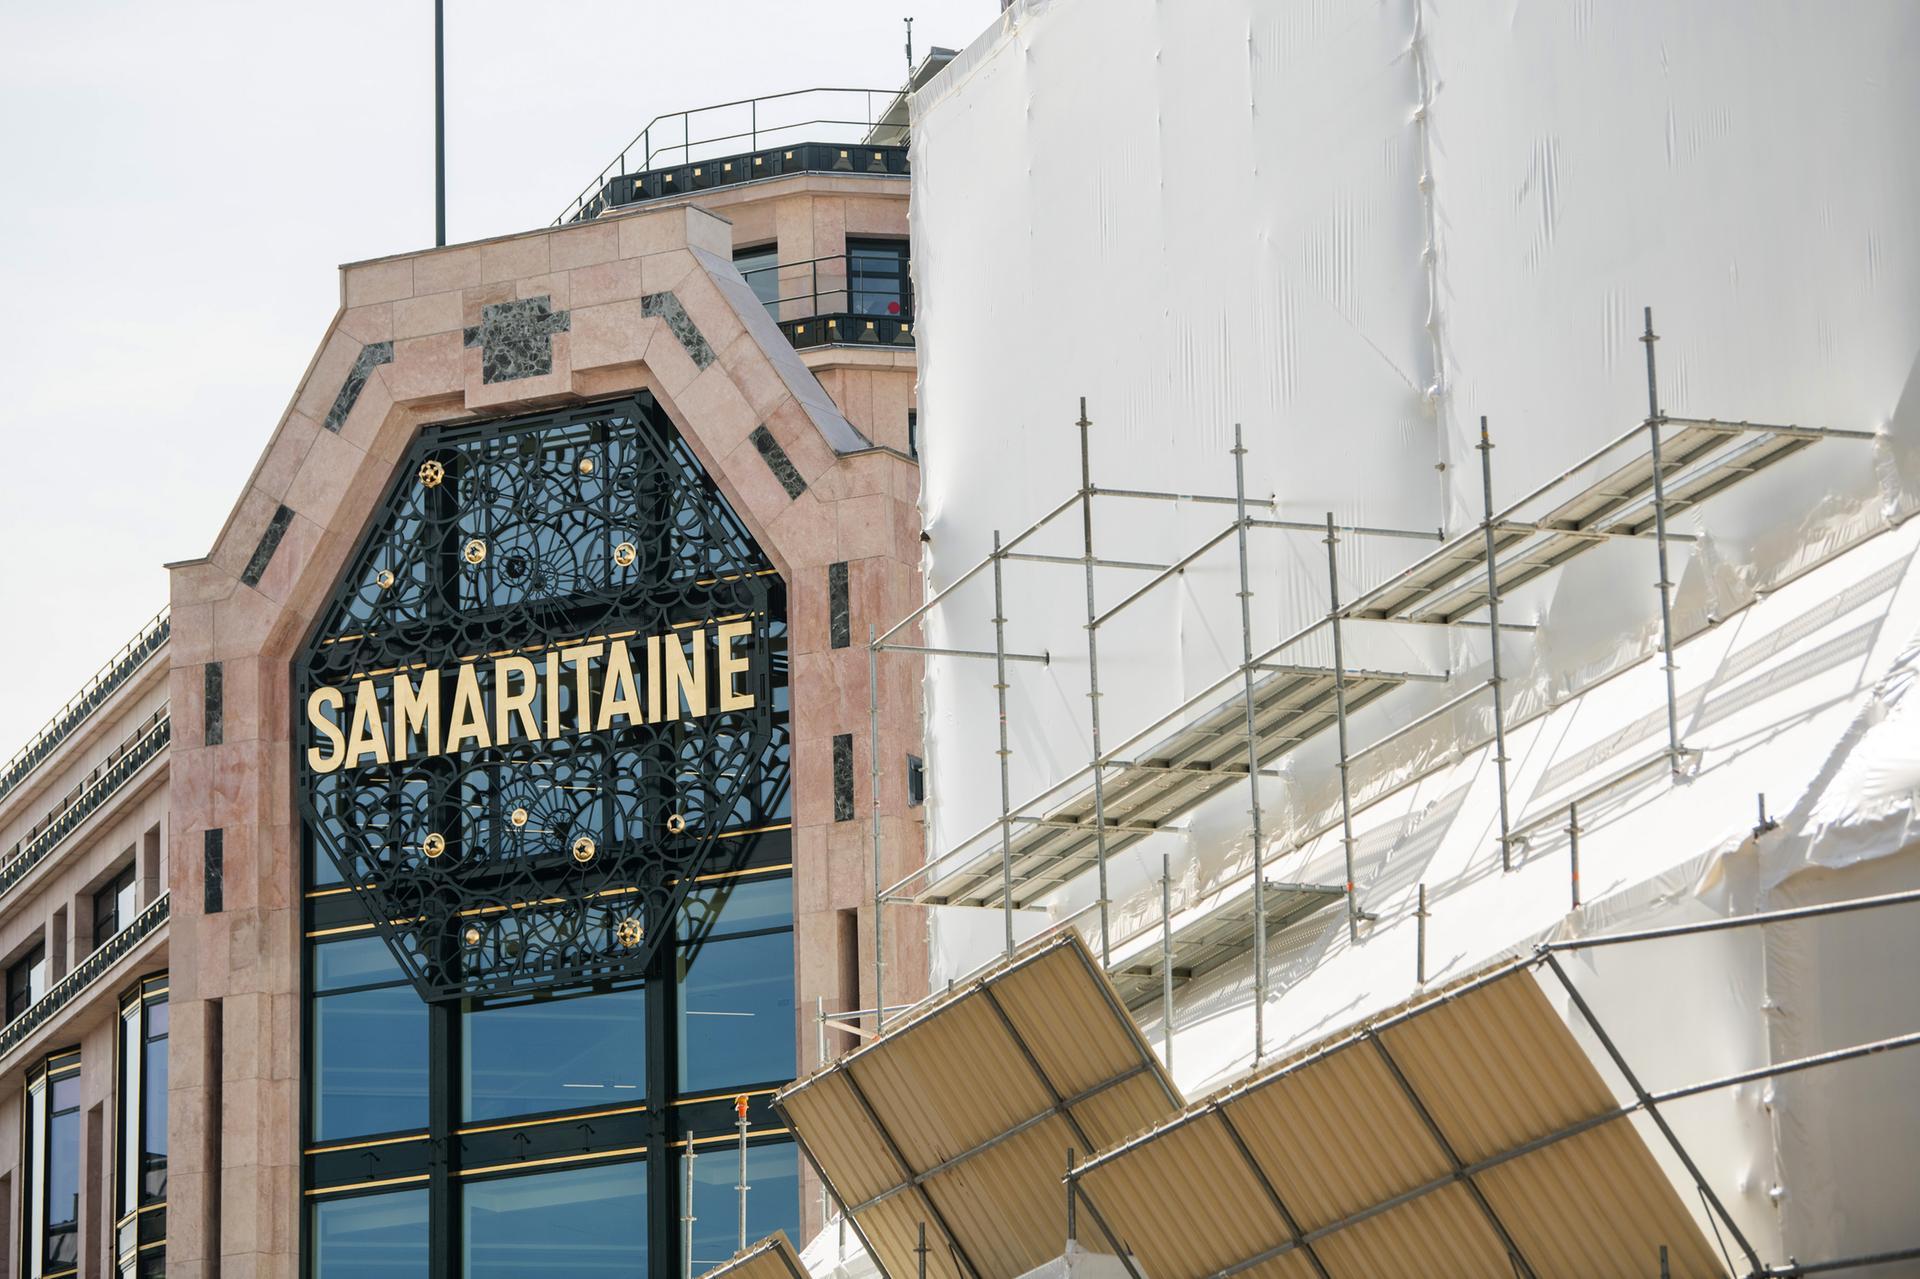 La Samaritaine department store: LVMH opens $894 million luxury